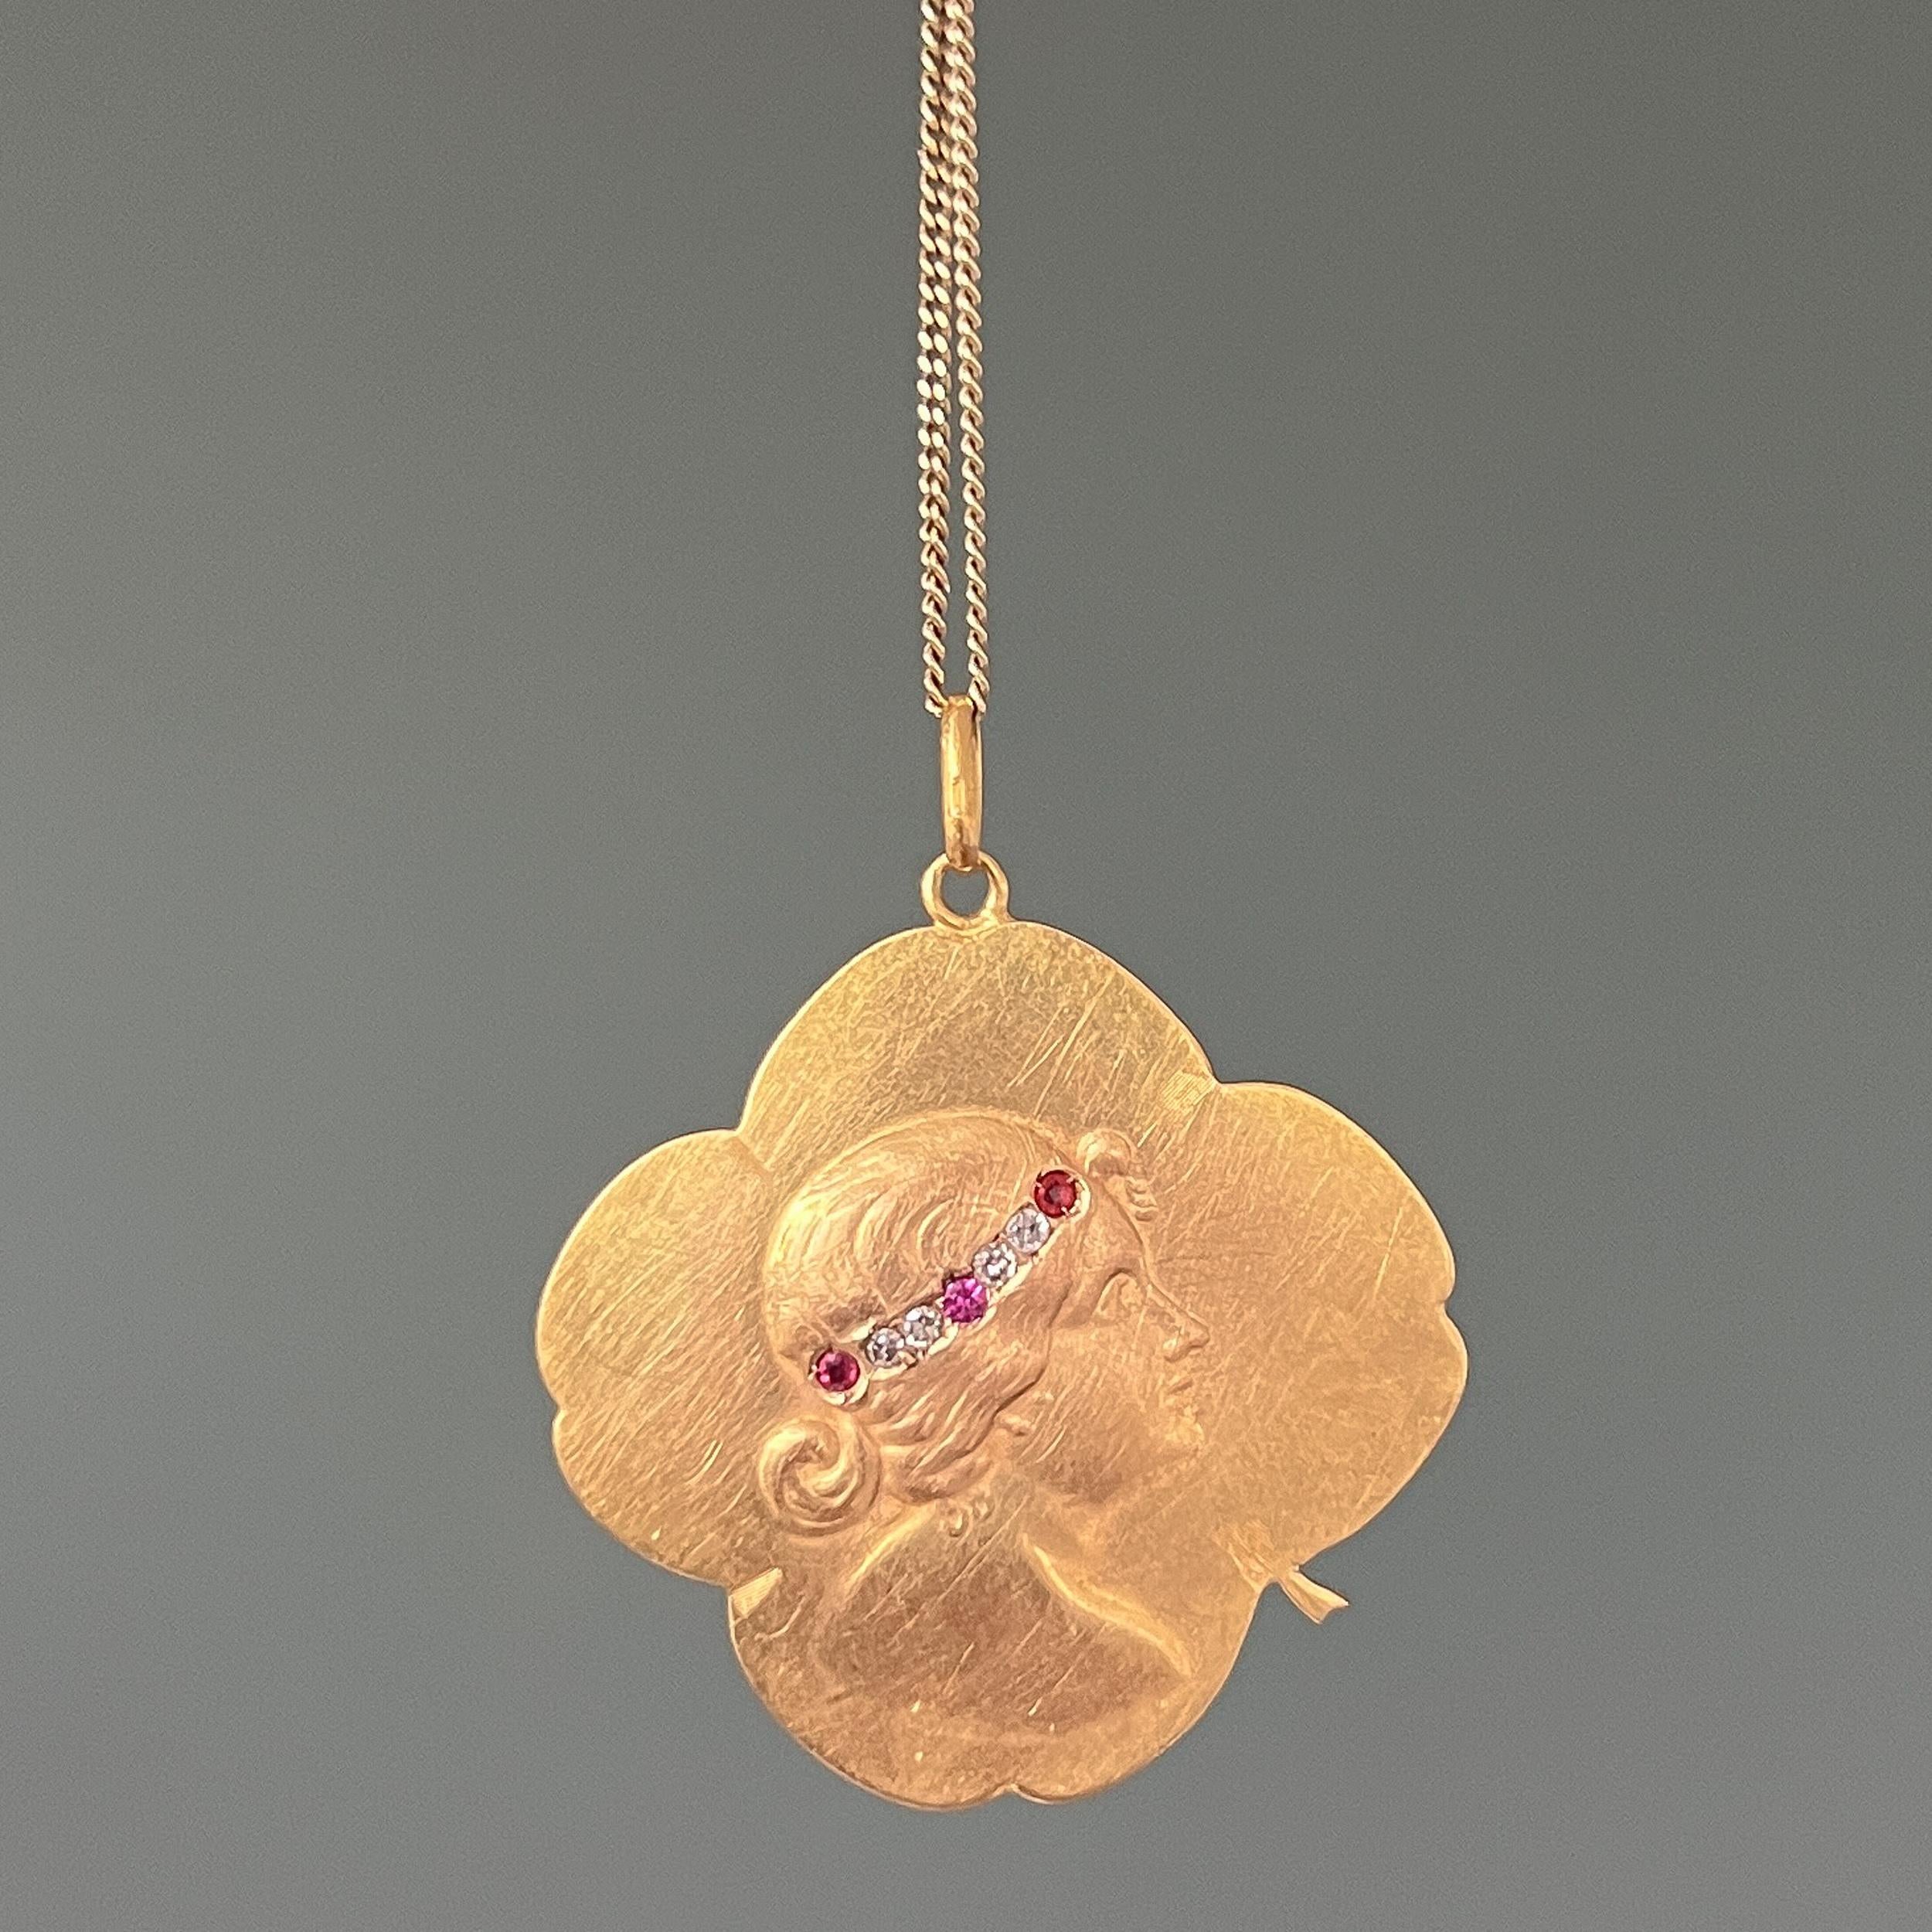 Ce pendentif antique en forme de trèfle à quatre feuilles date du mouvement Art nouveau, 1890-1914. Le charmant pendentif en forme de trèfle à quatre feuilles est créé en or jaune 20 carats et représente un portrait de femme dans un profil en